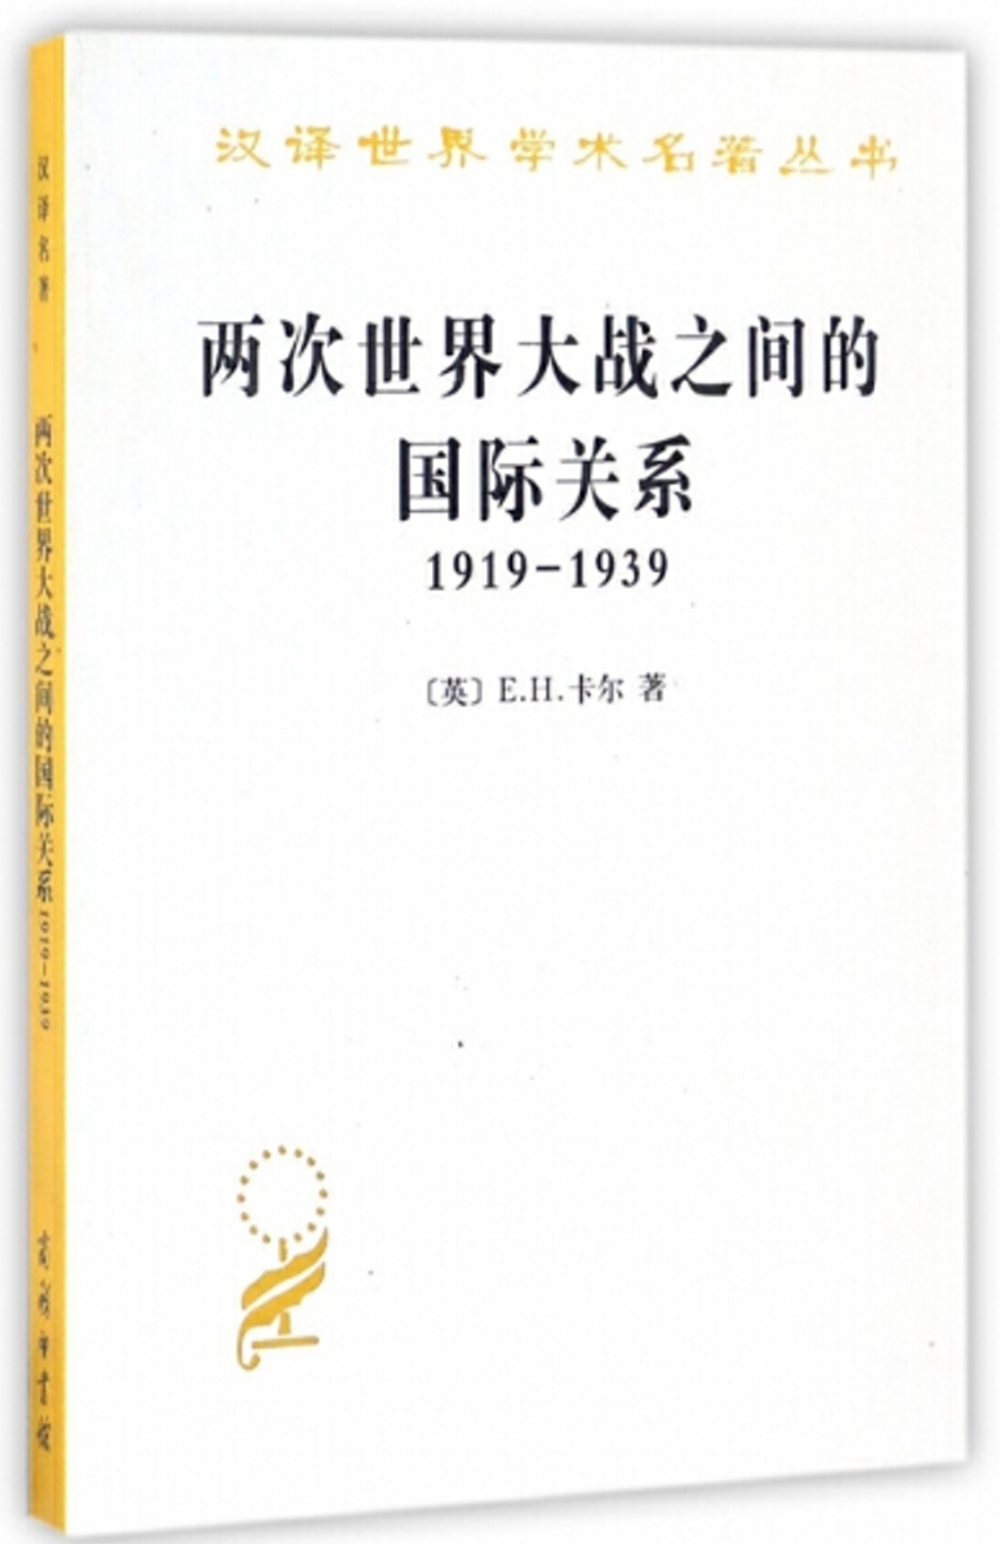 兩次世界大戰之間的國際關係(1919-1939)